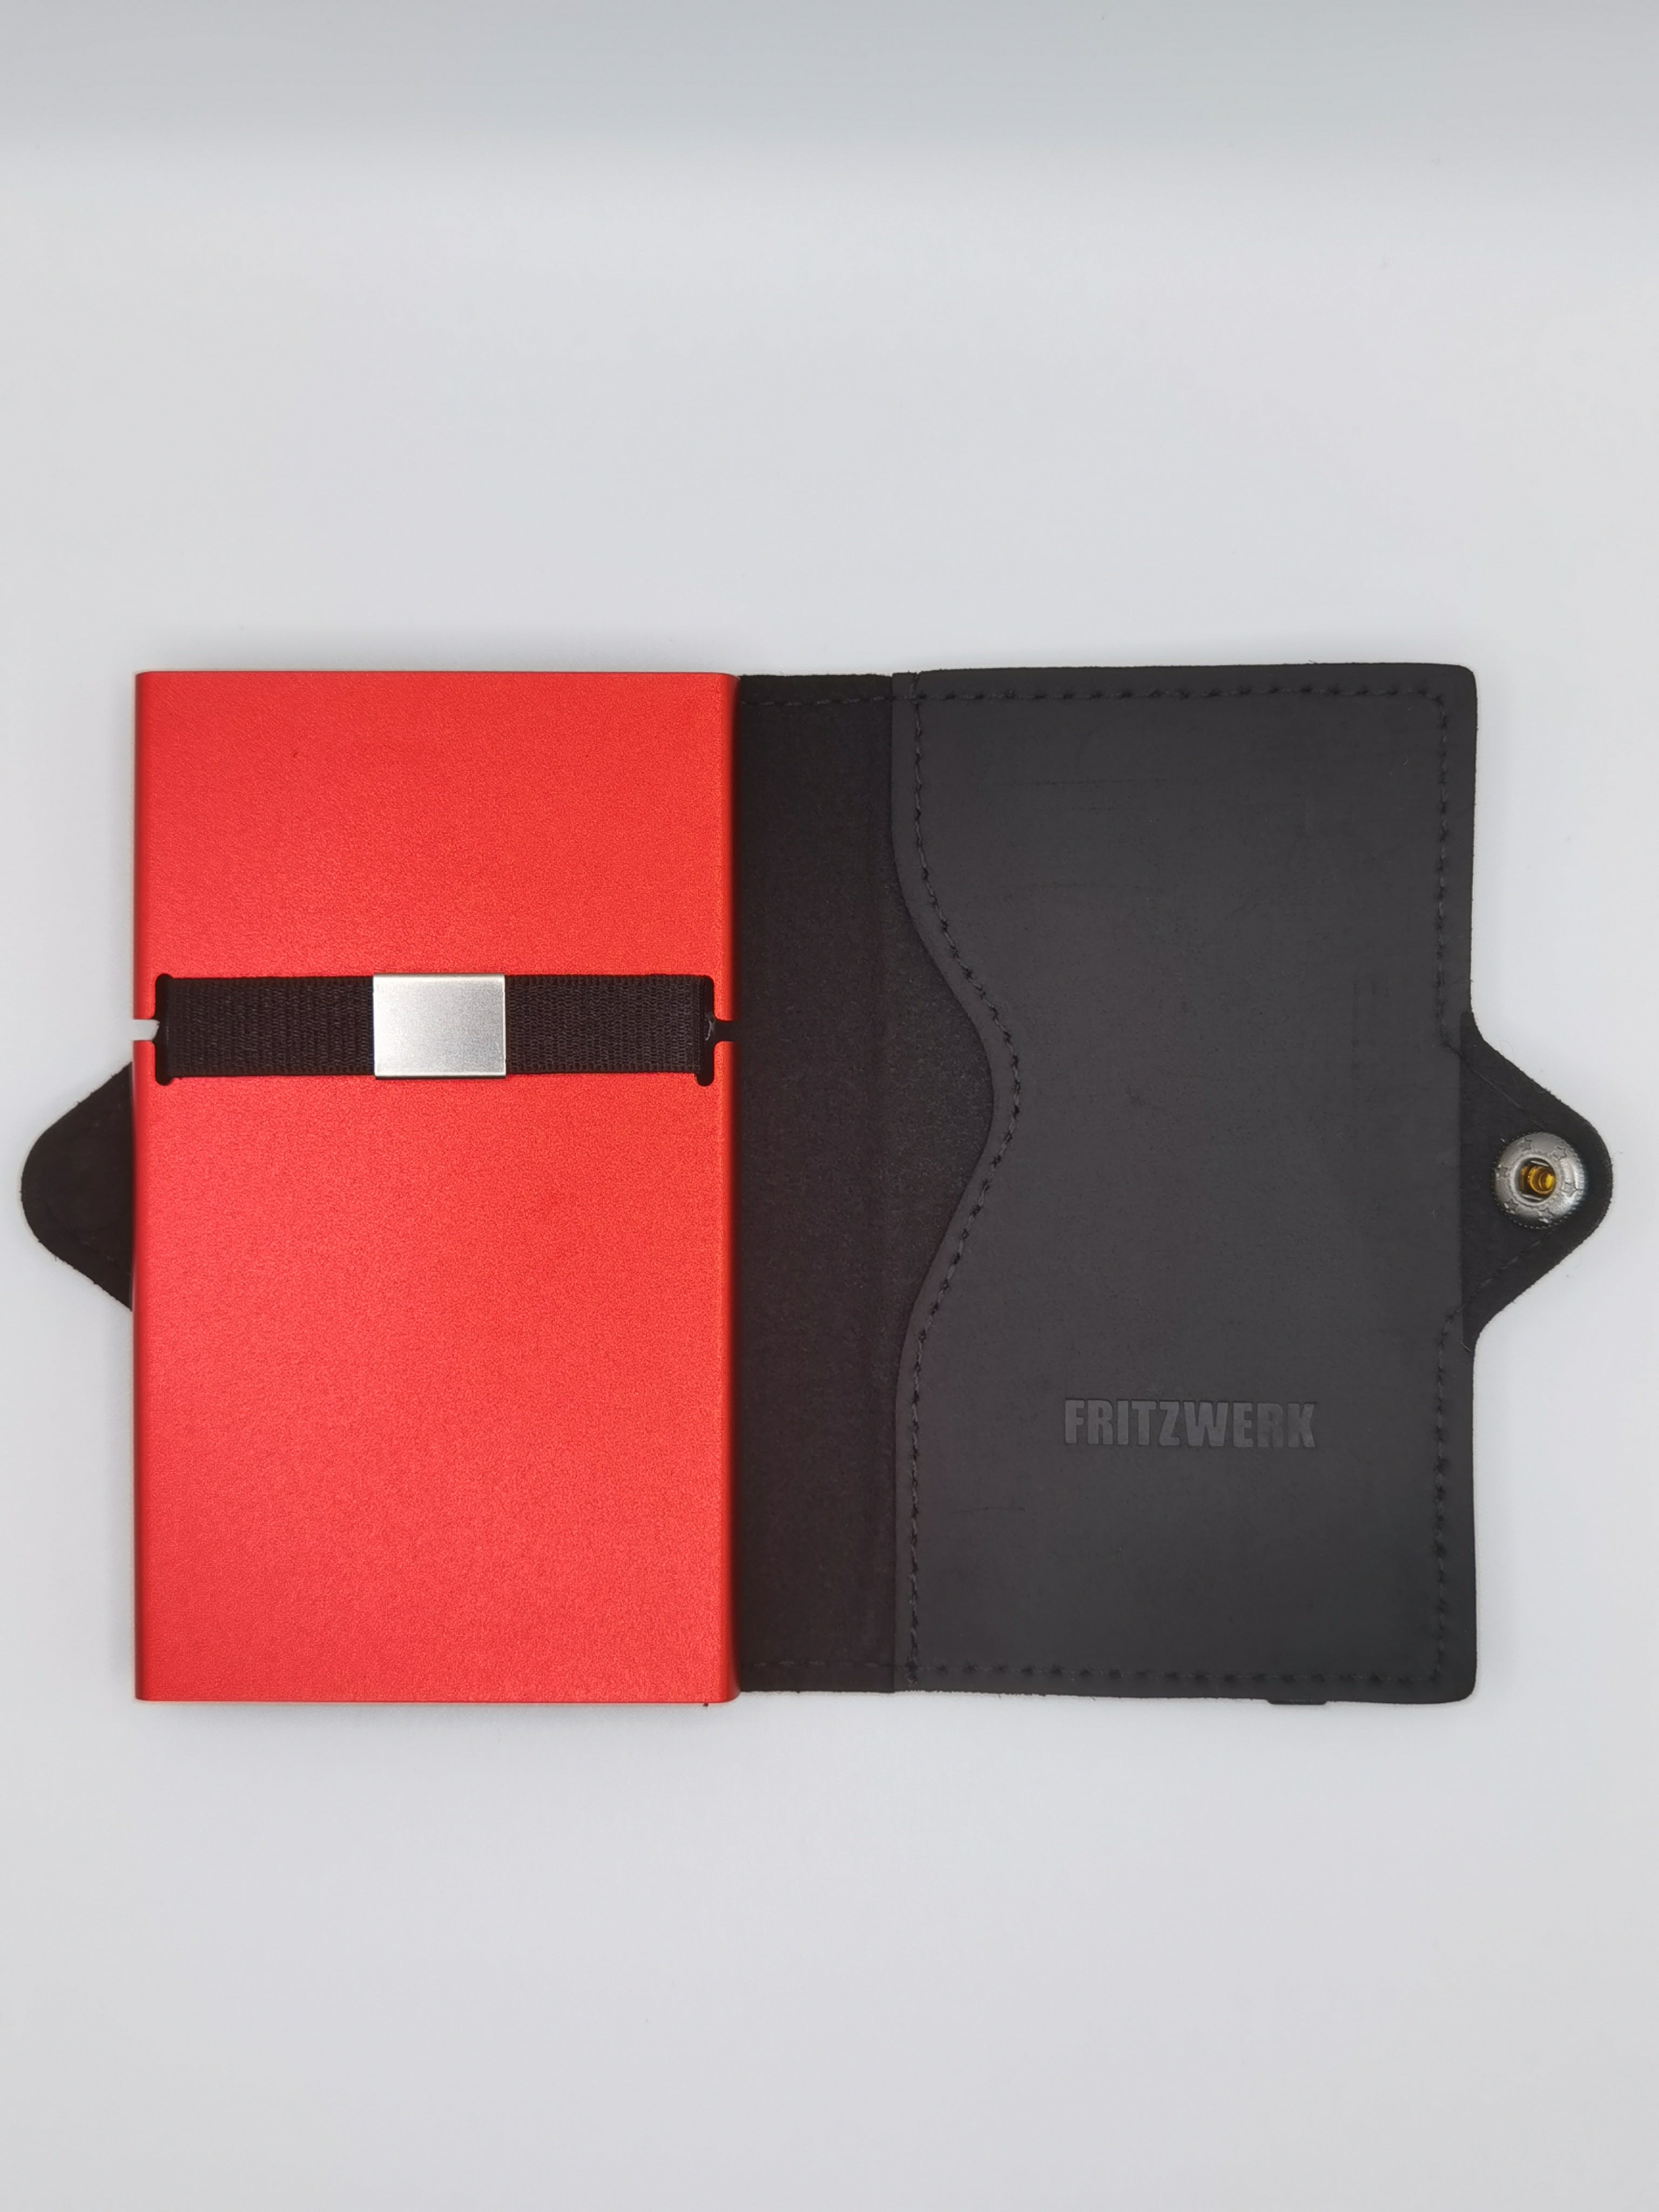 FRITZWERK Slim Fritz - Premium Business Wallet Echtleder Schwarz roter Cardholder Portmonee Geldbörse Kreditkartenetui A++